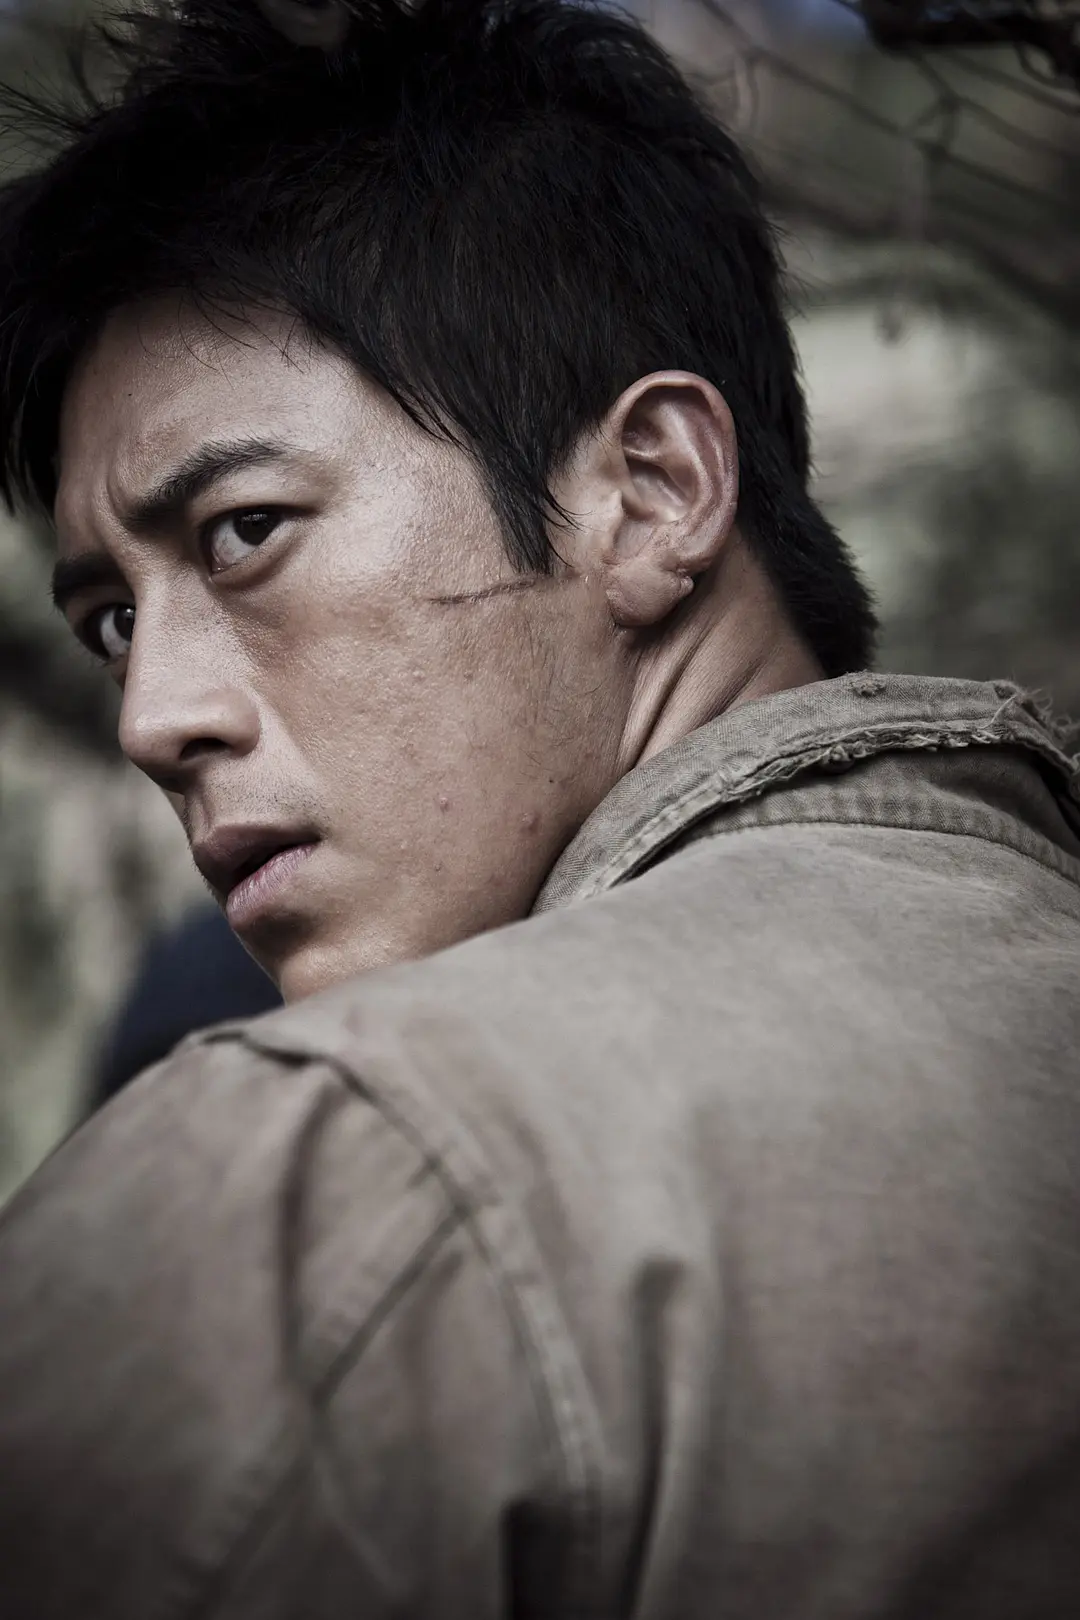 高洙和申河均主演的《高地战》曾经获得韩国大钟奖最佳电影奖